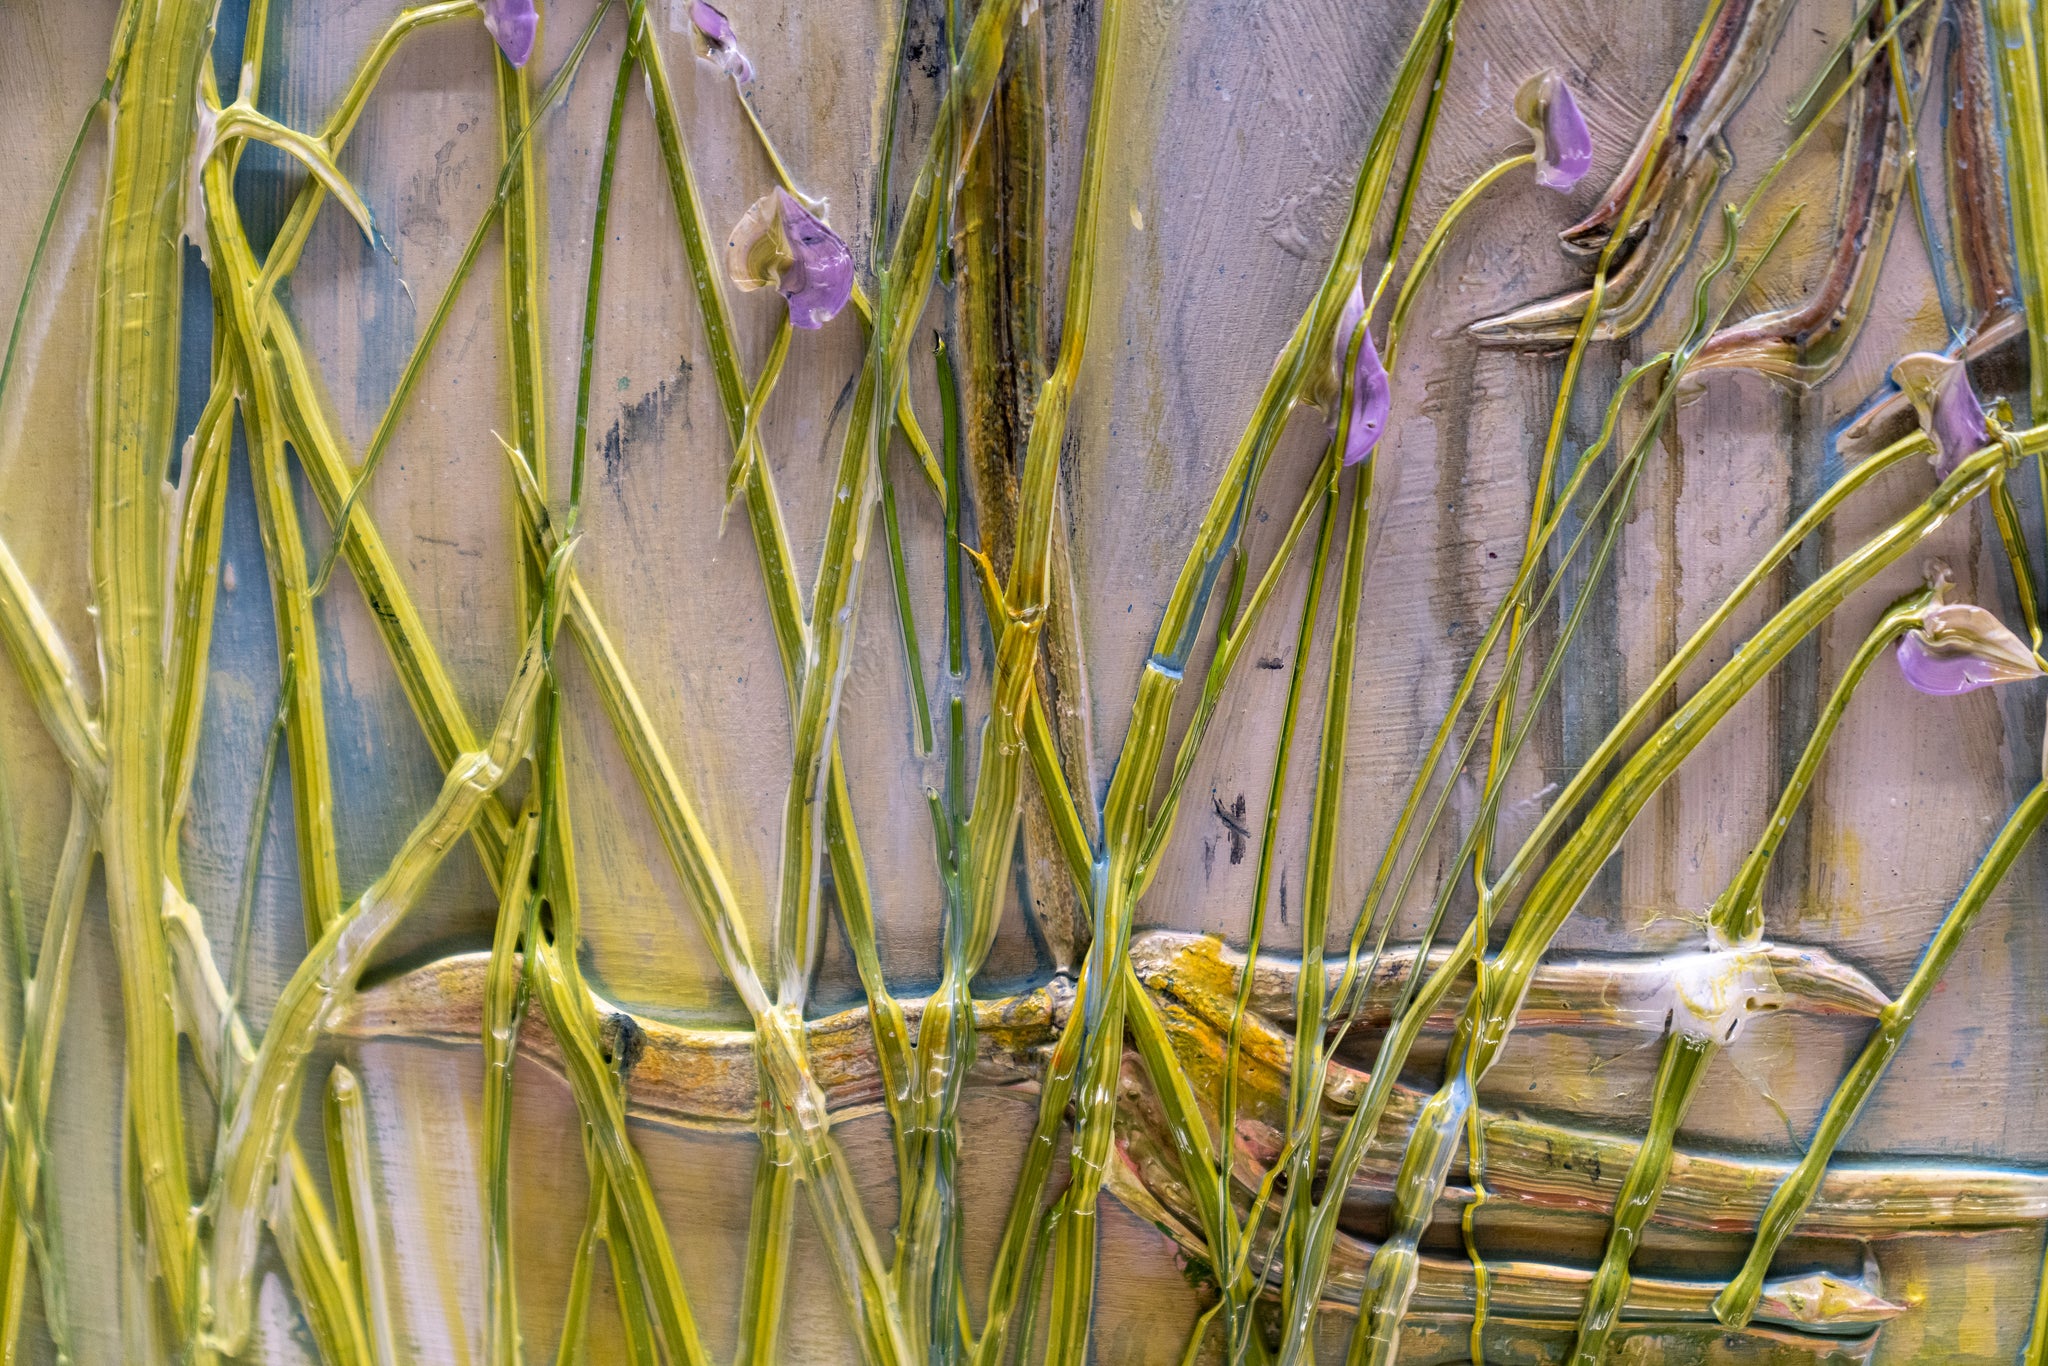 Heron and Yellow Irises, 36x36